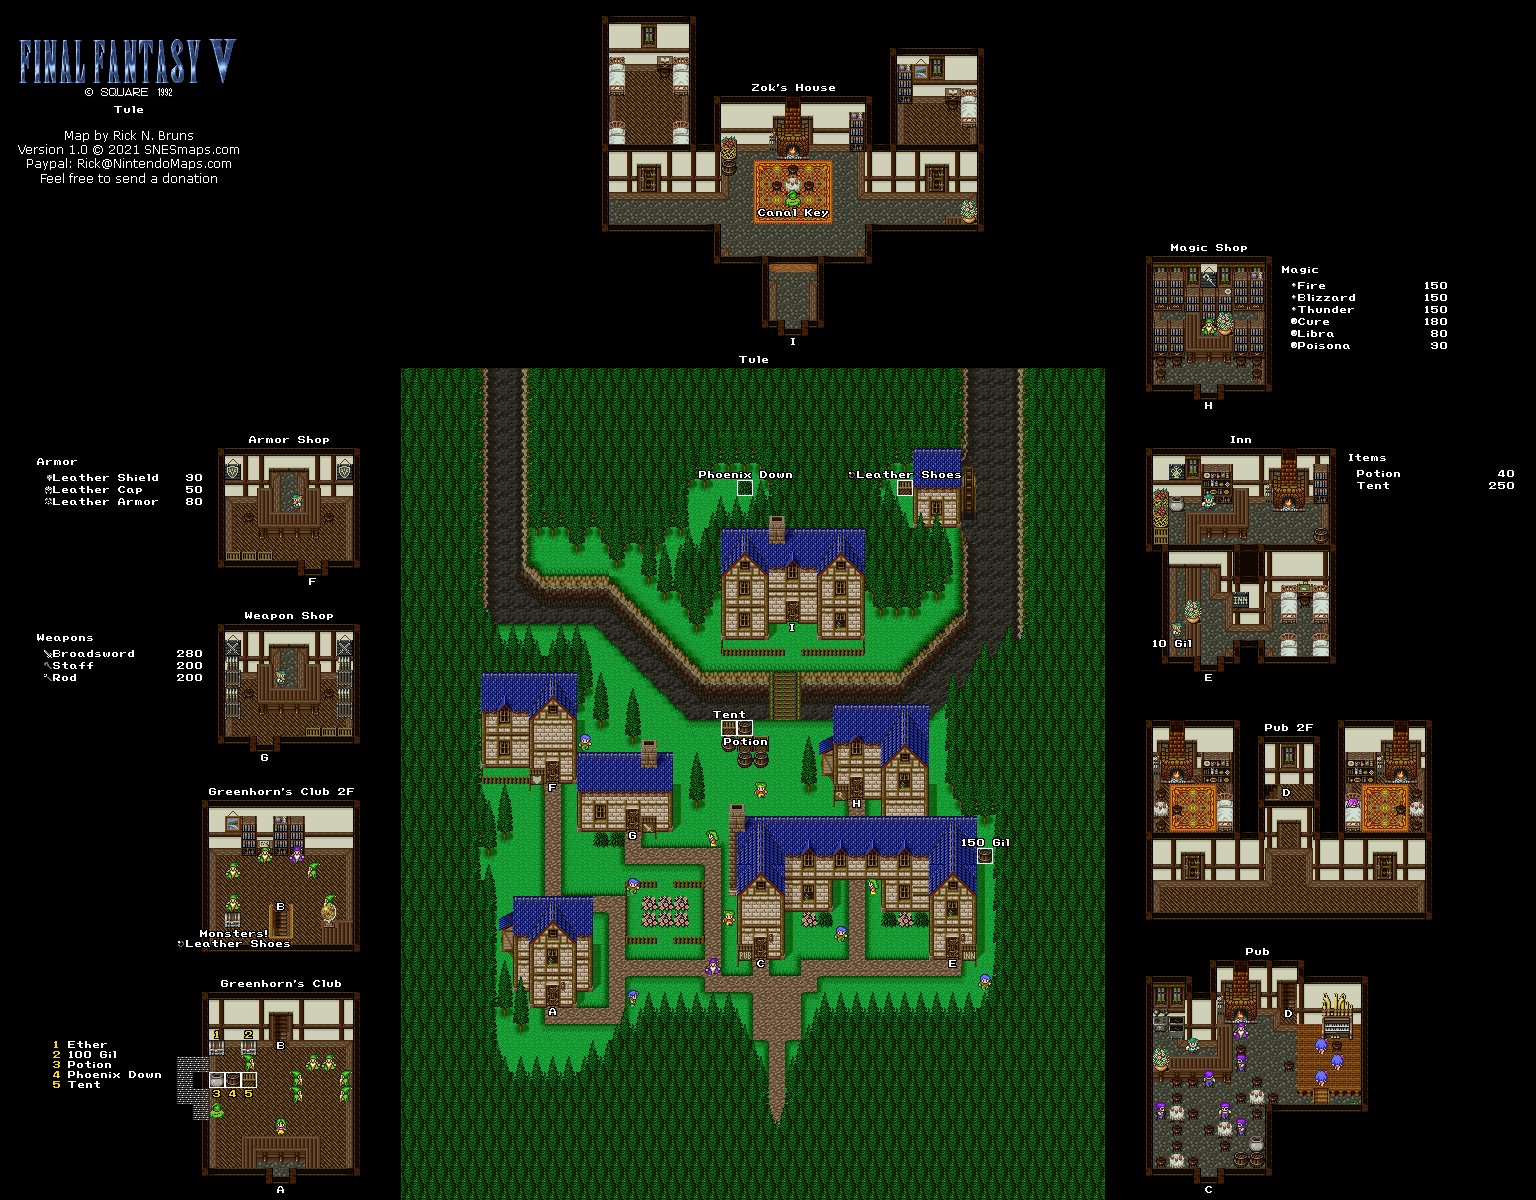 Final Fantasy V (5) - Tule Super Famicom SFC Map